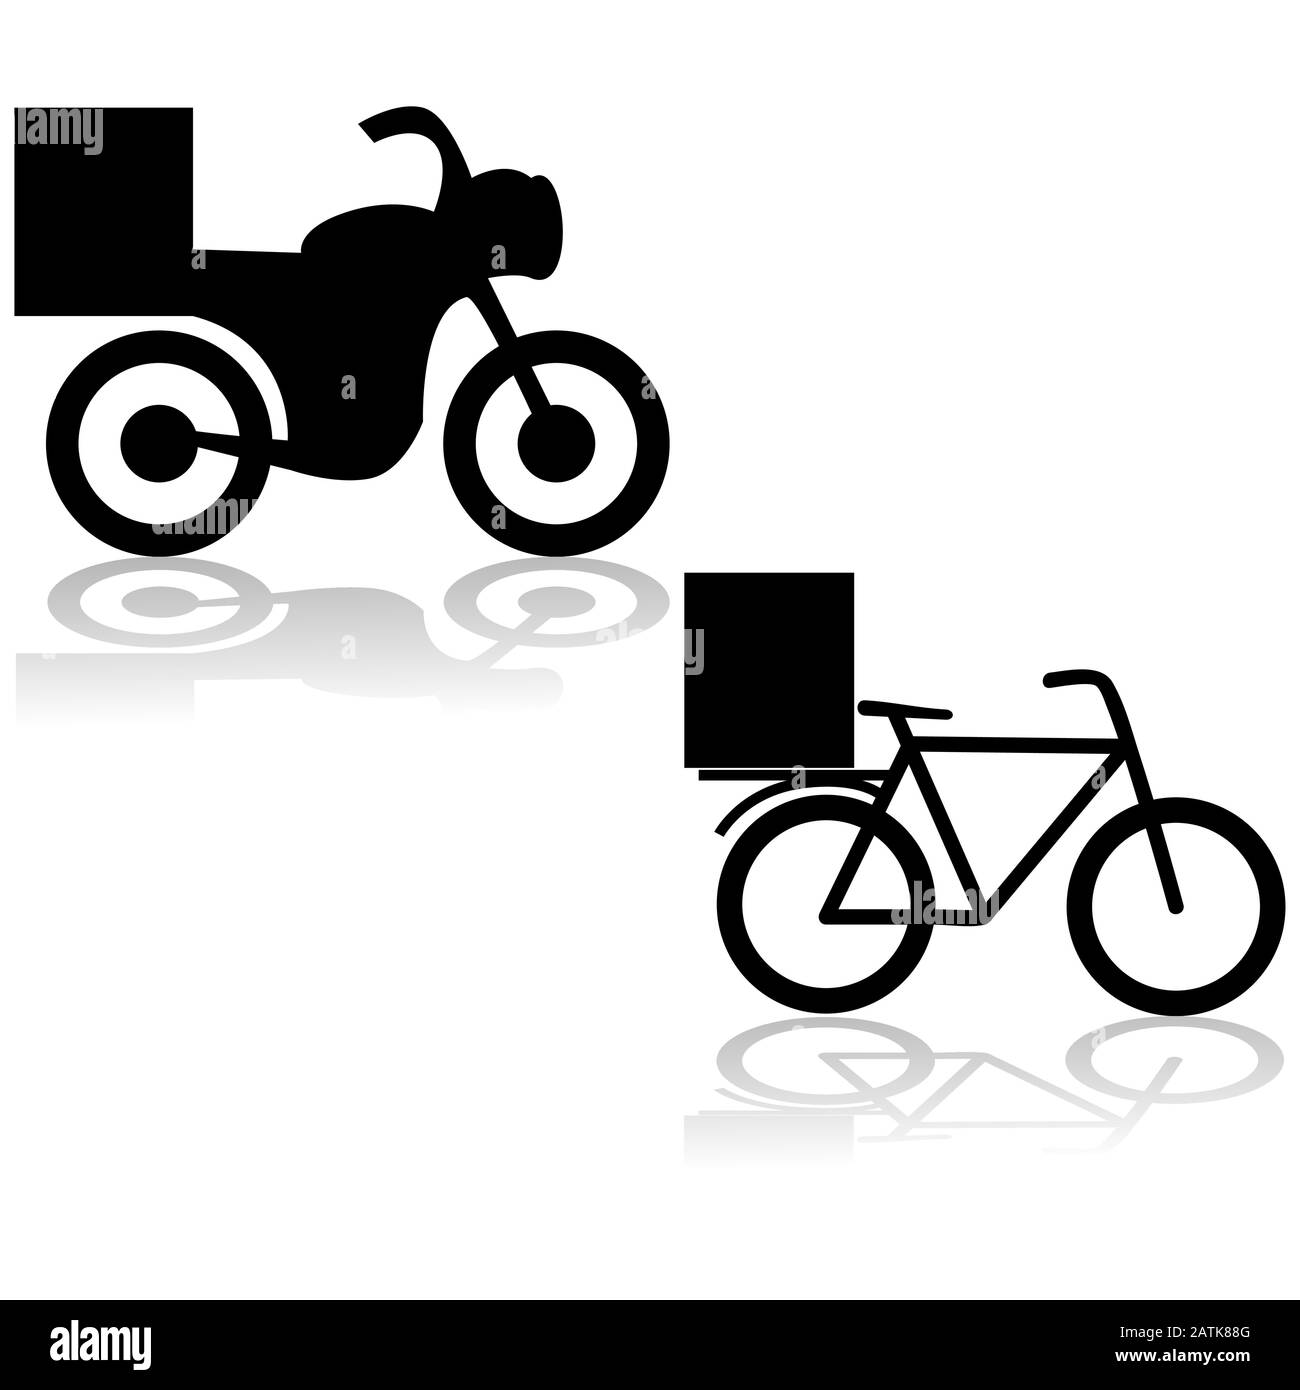 Iconos que muestran una motocicleta y una bicicleta utilizada para la entrega de alimentos Ilustración del Vector